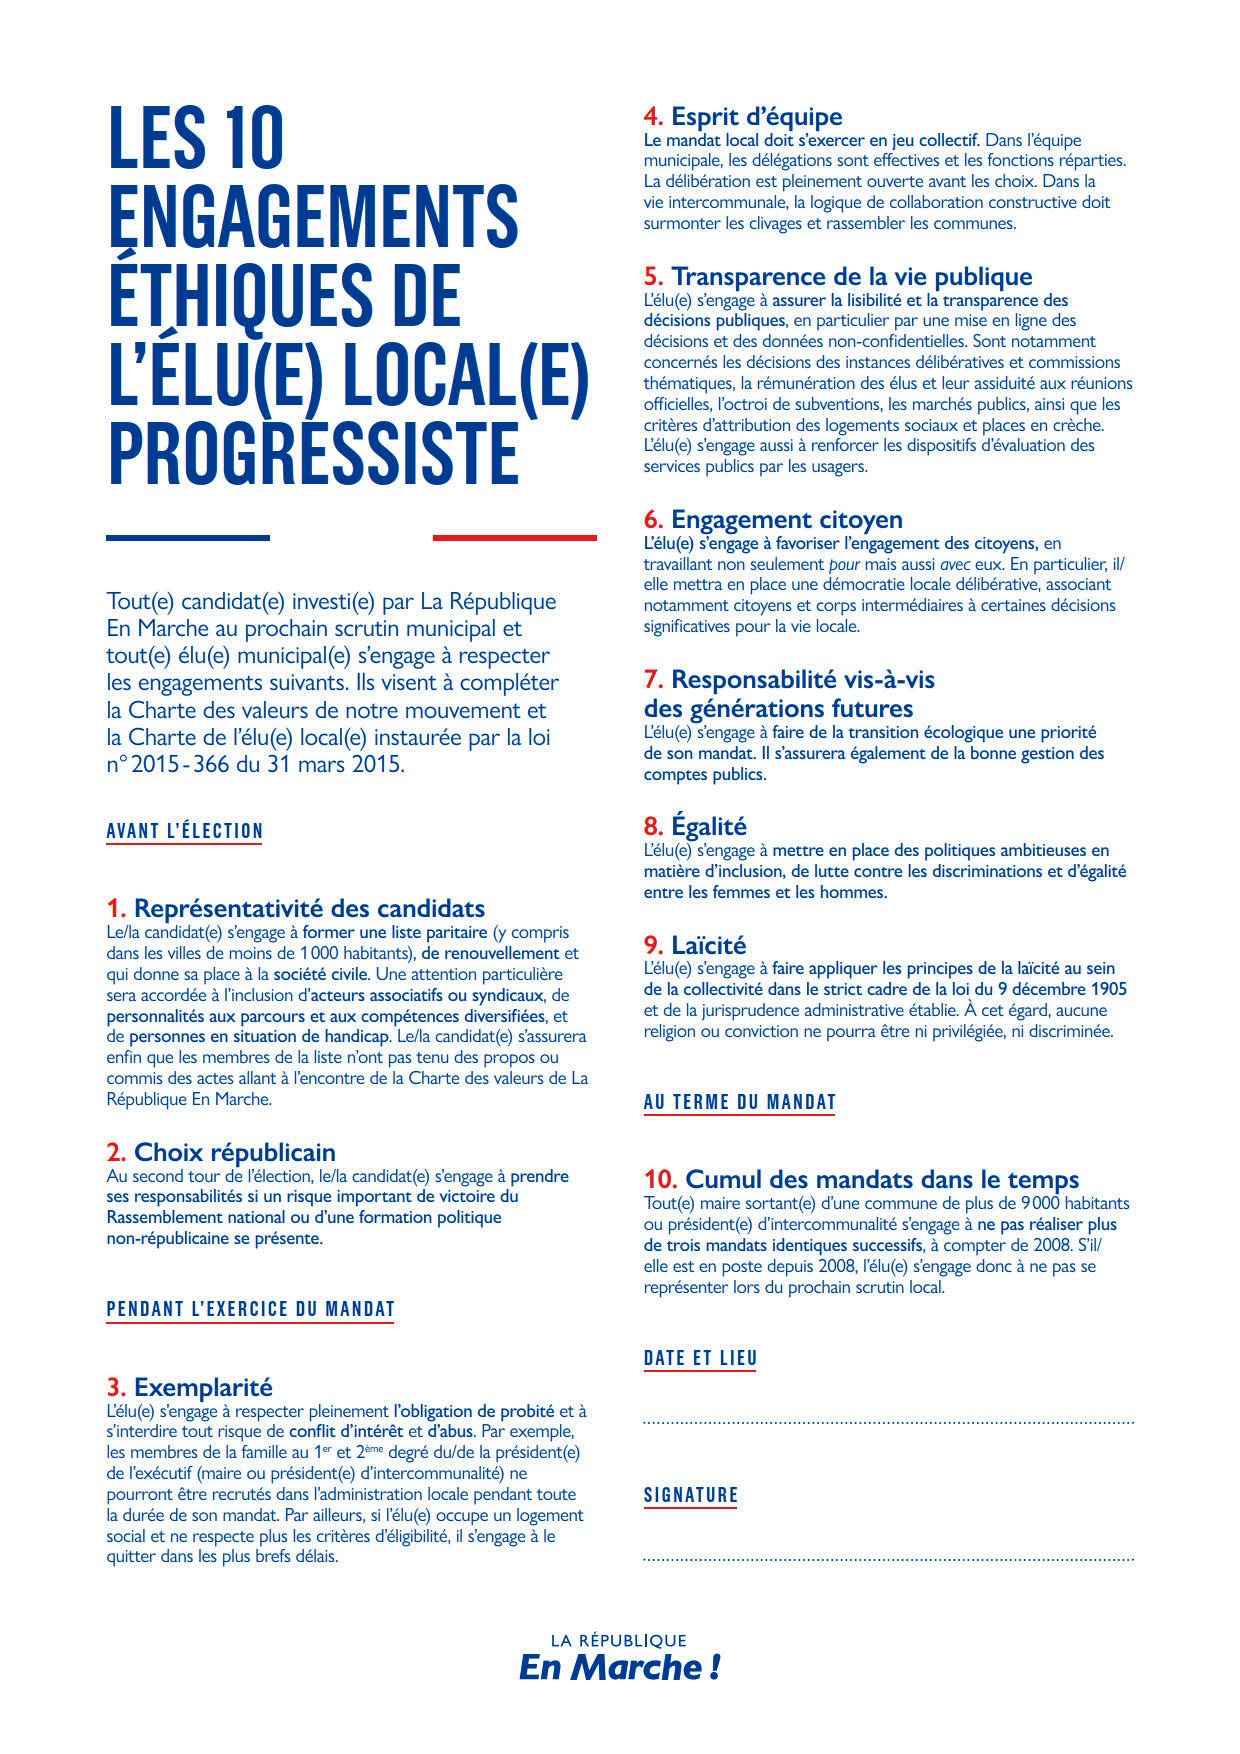 10 engagements éthiques - Élu local progressiste - LREM